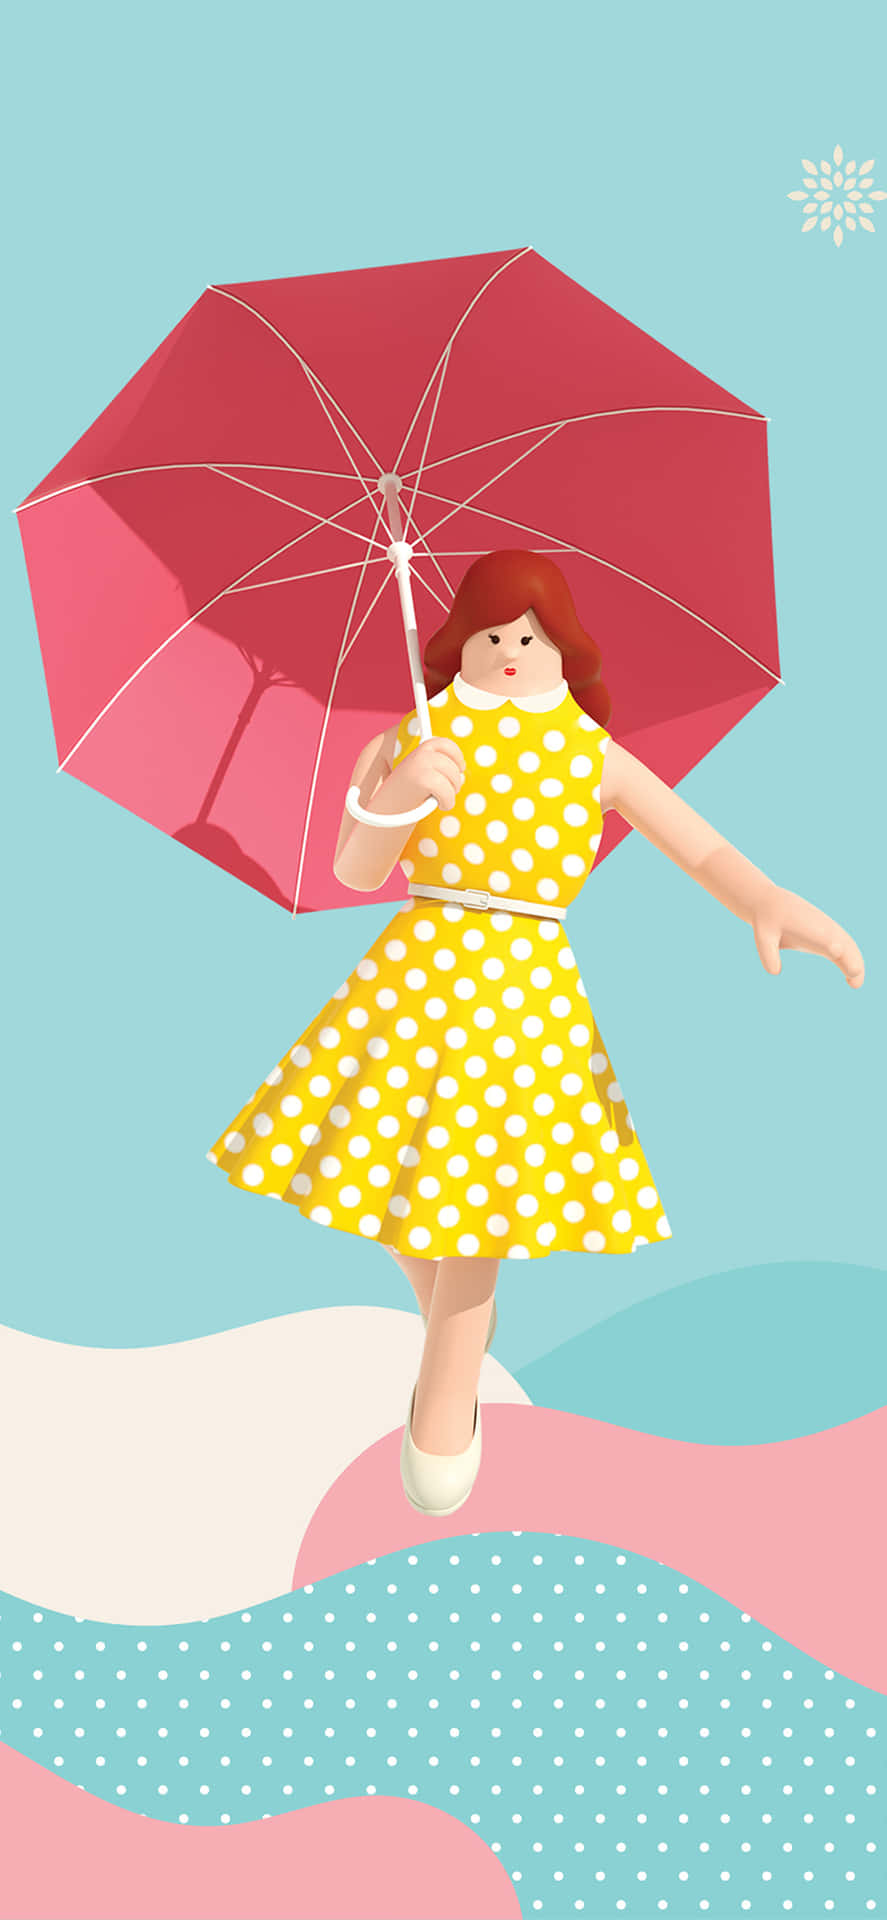 Enflicka Håller En Paraply. Wallpaper